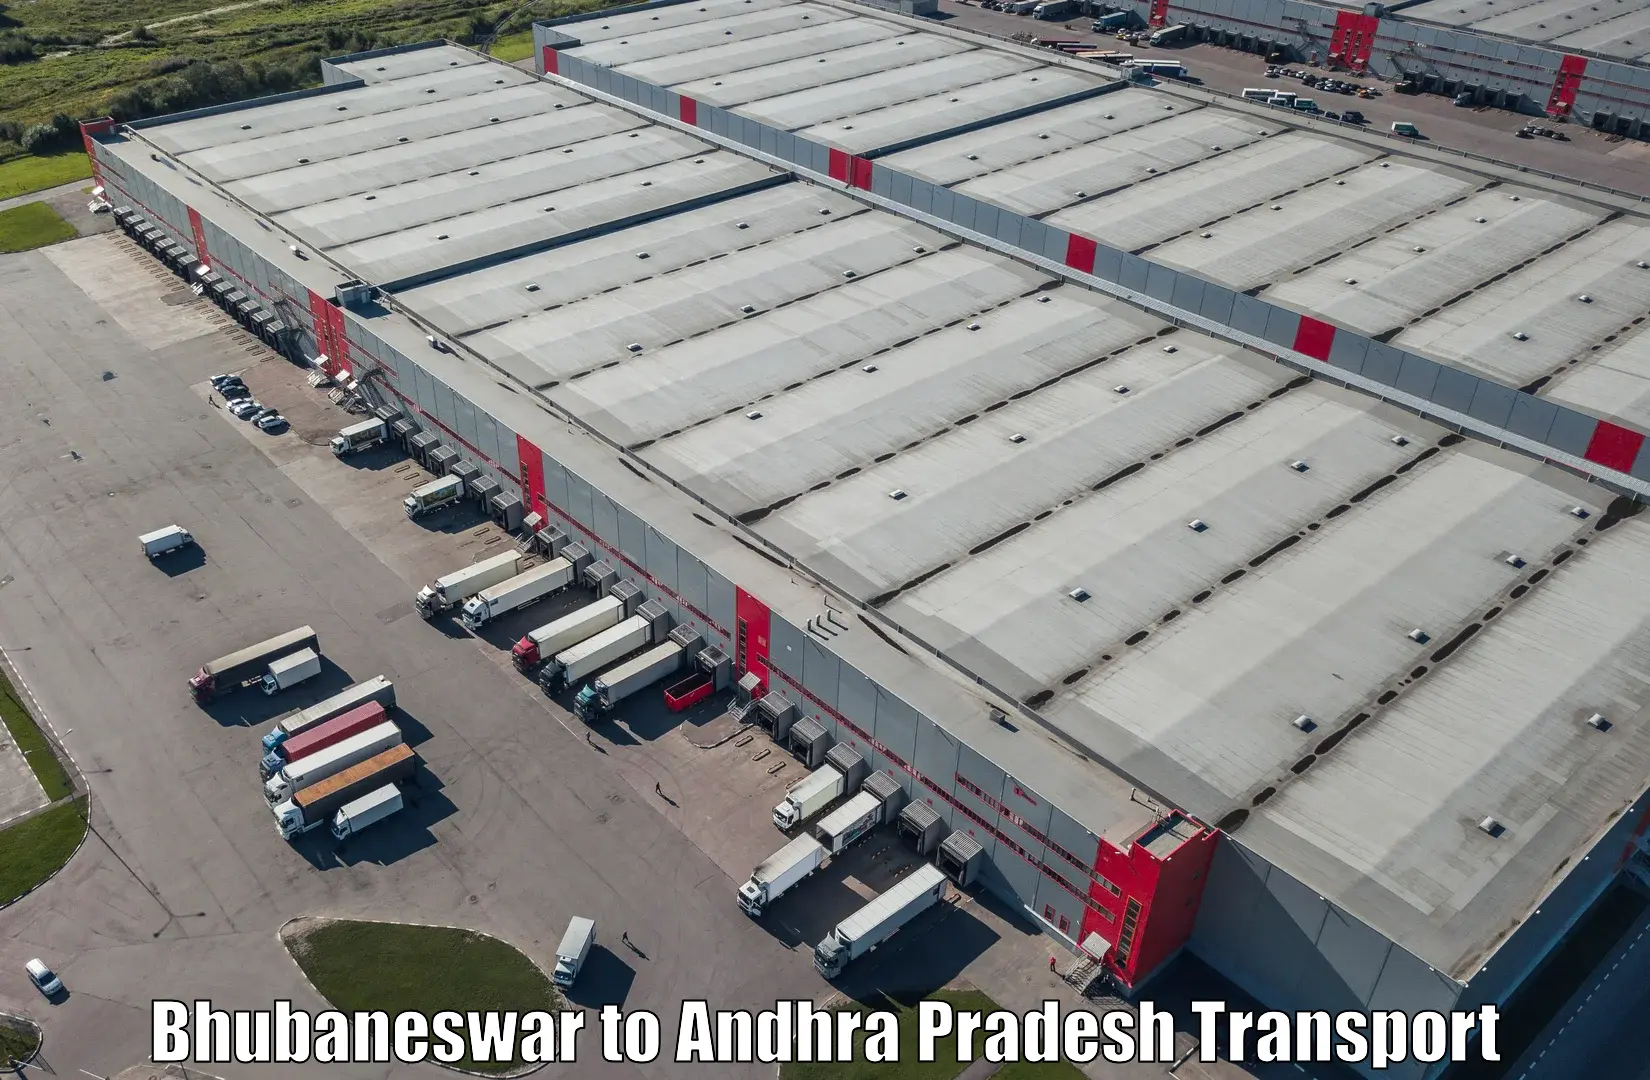 Luggage transport services Bhubaneswar to Puttur Tirupati